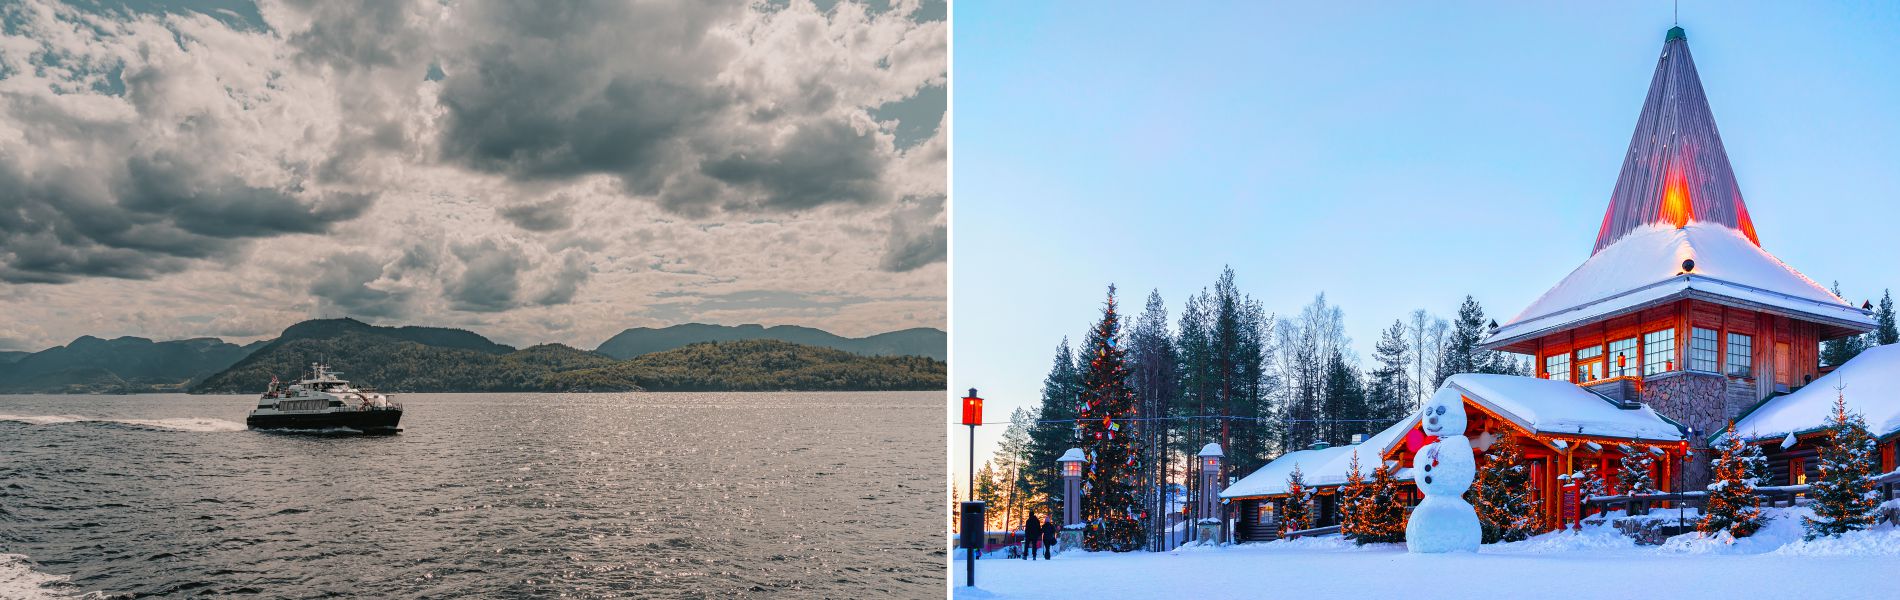 Winter Wonderland (Finland + Norway) - 12 Days / 11 Nights